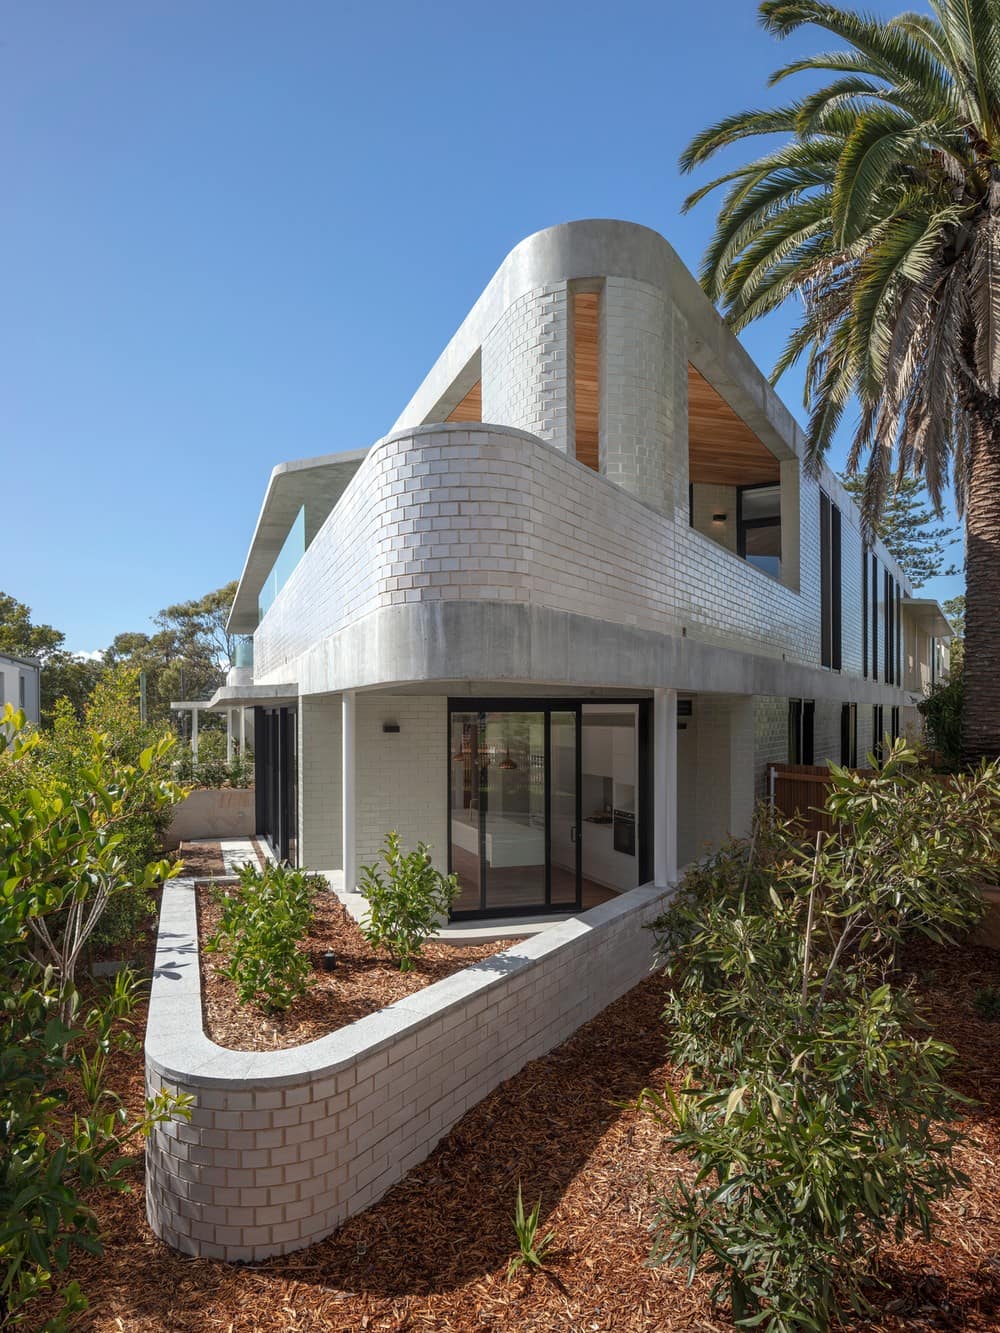 Foamcrest Apartments / Richard Cole Architecture